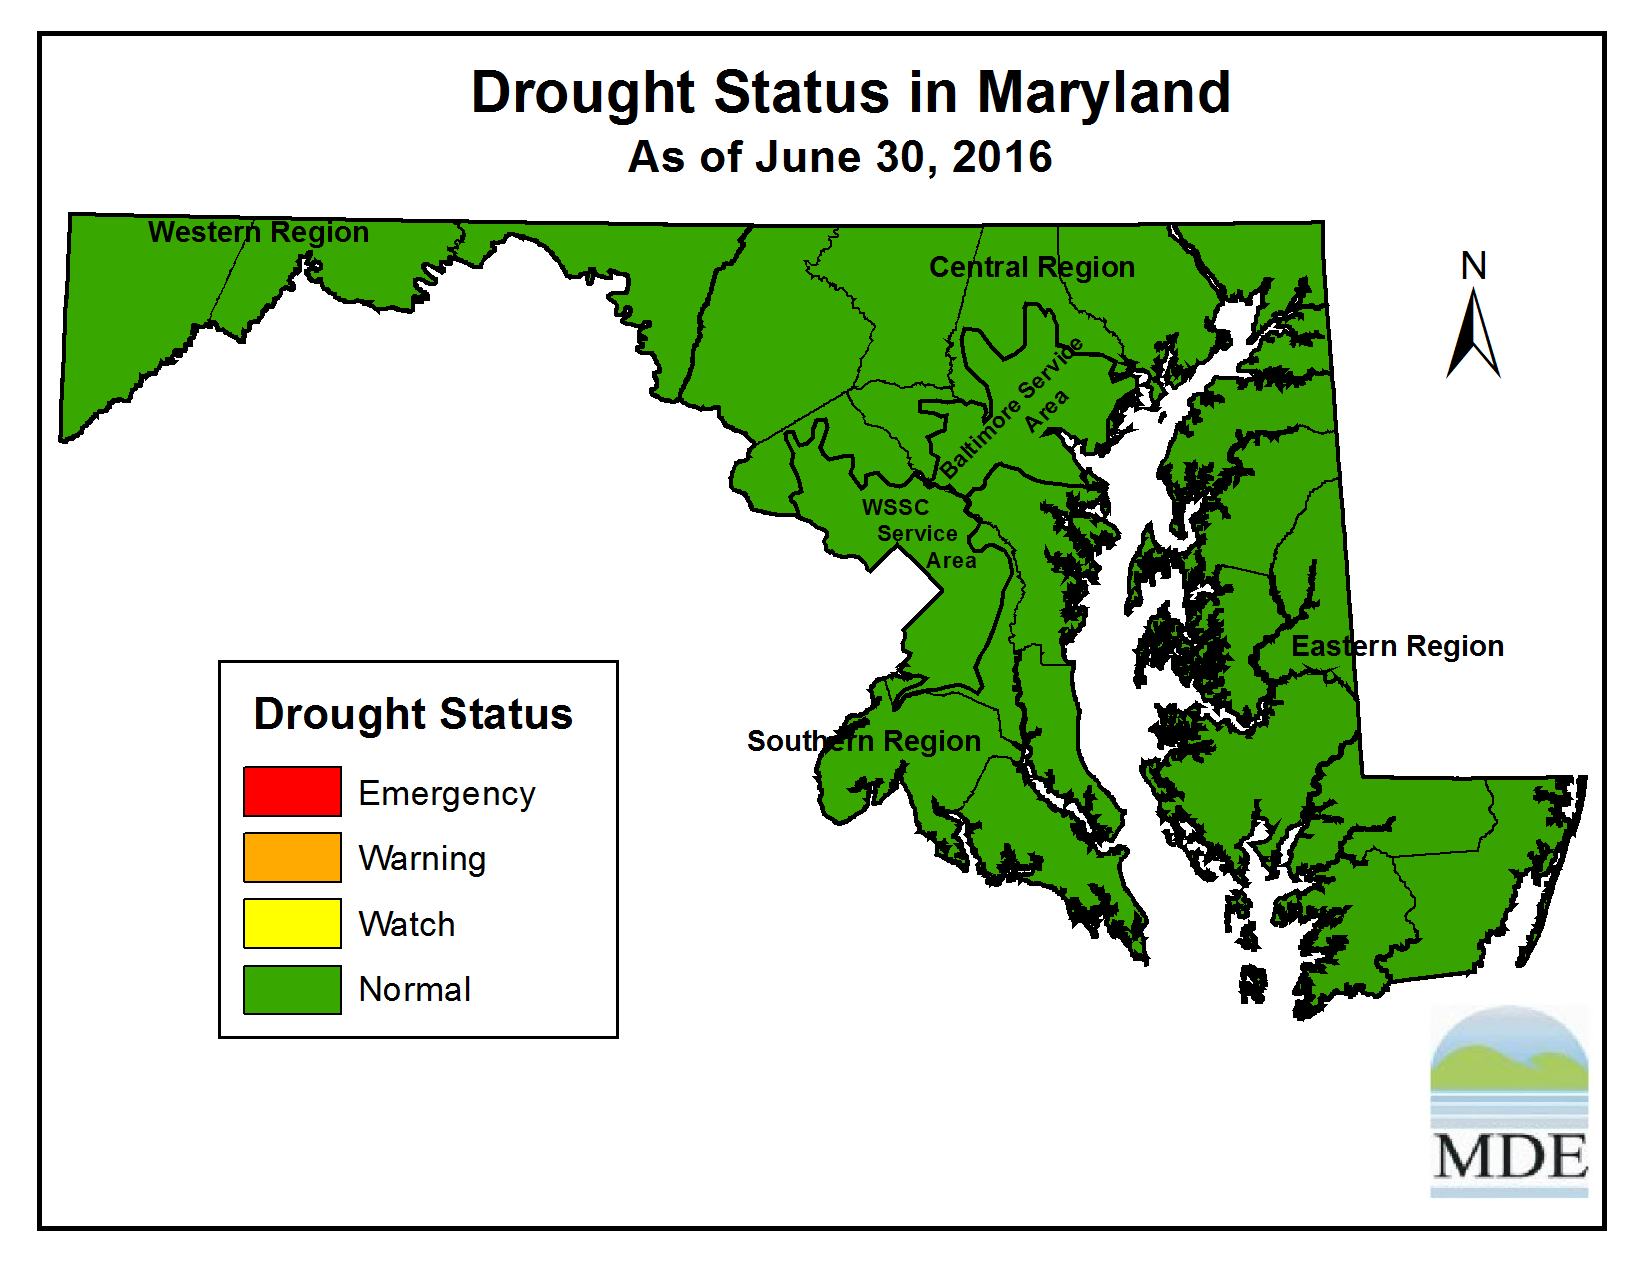 Drought Status as of June 30, 2016